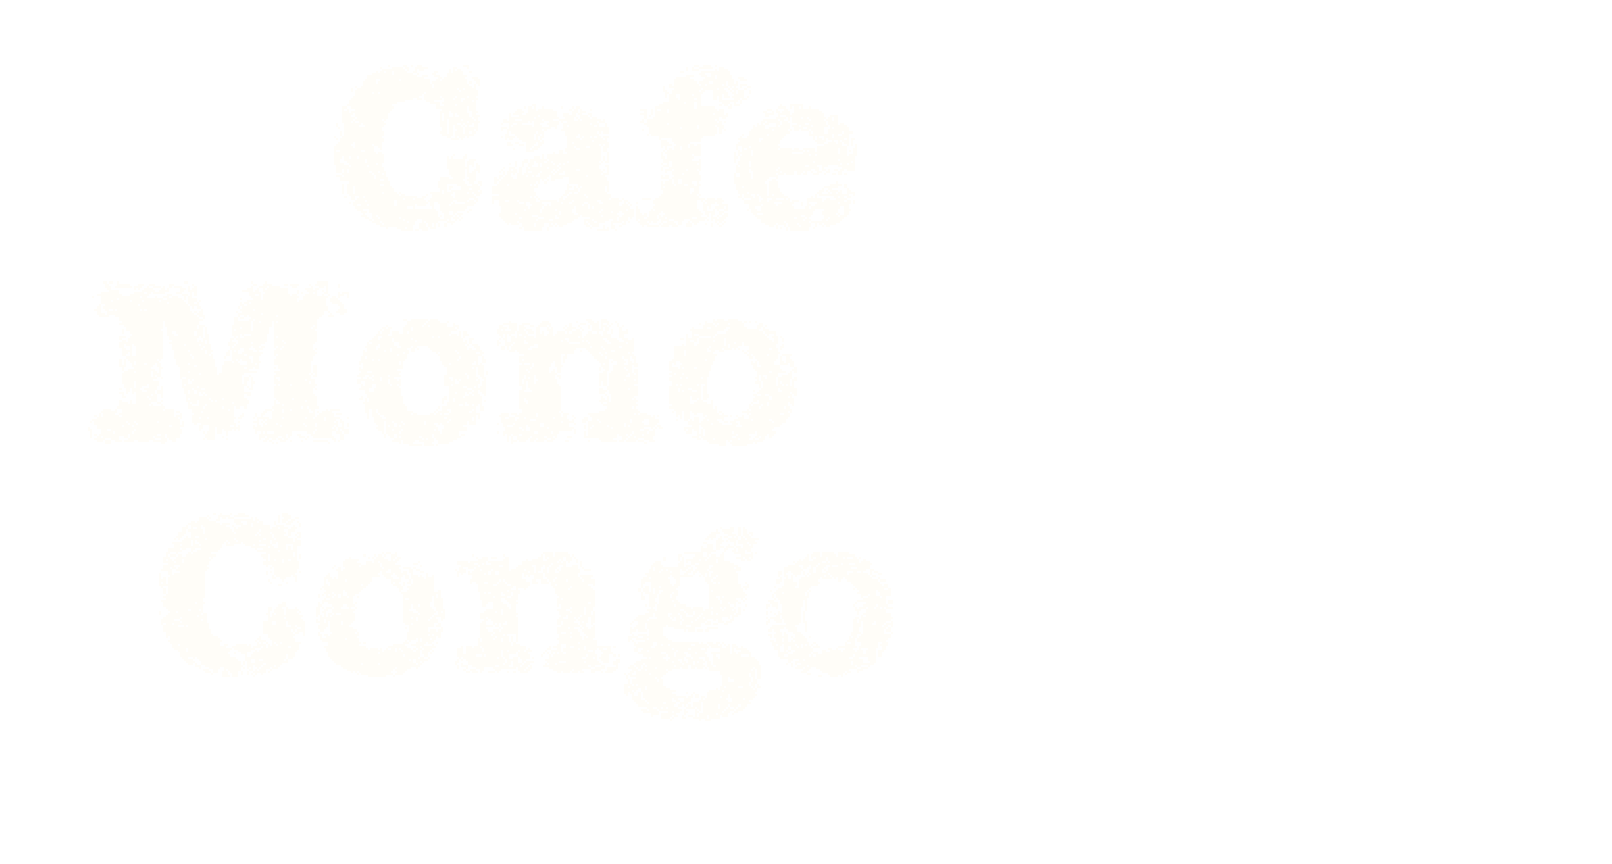 Cafe Mono Congo